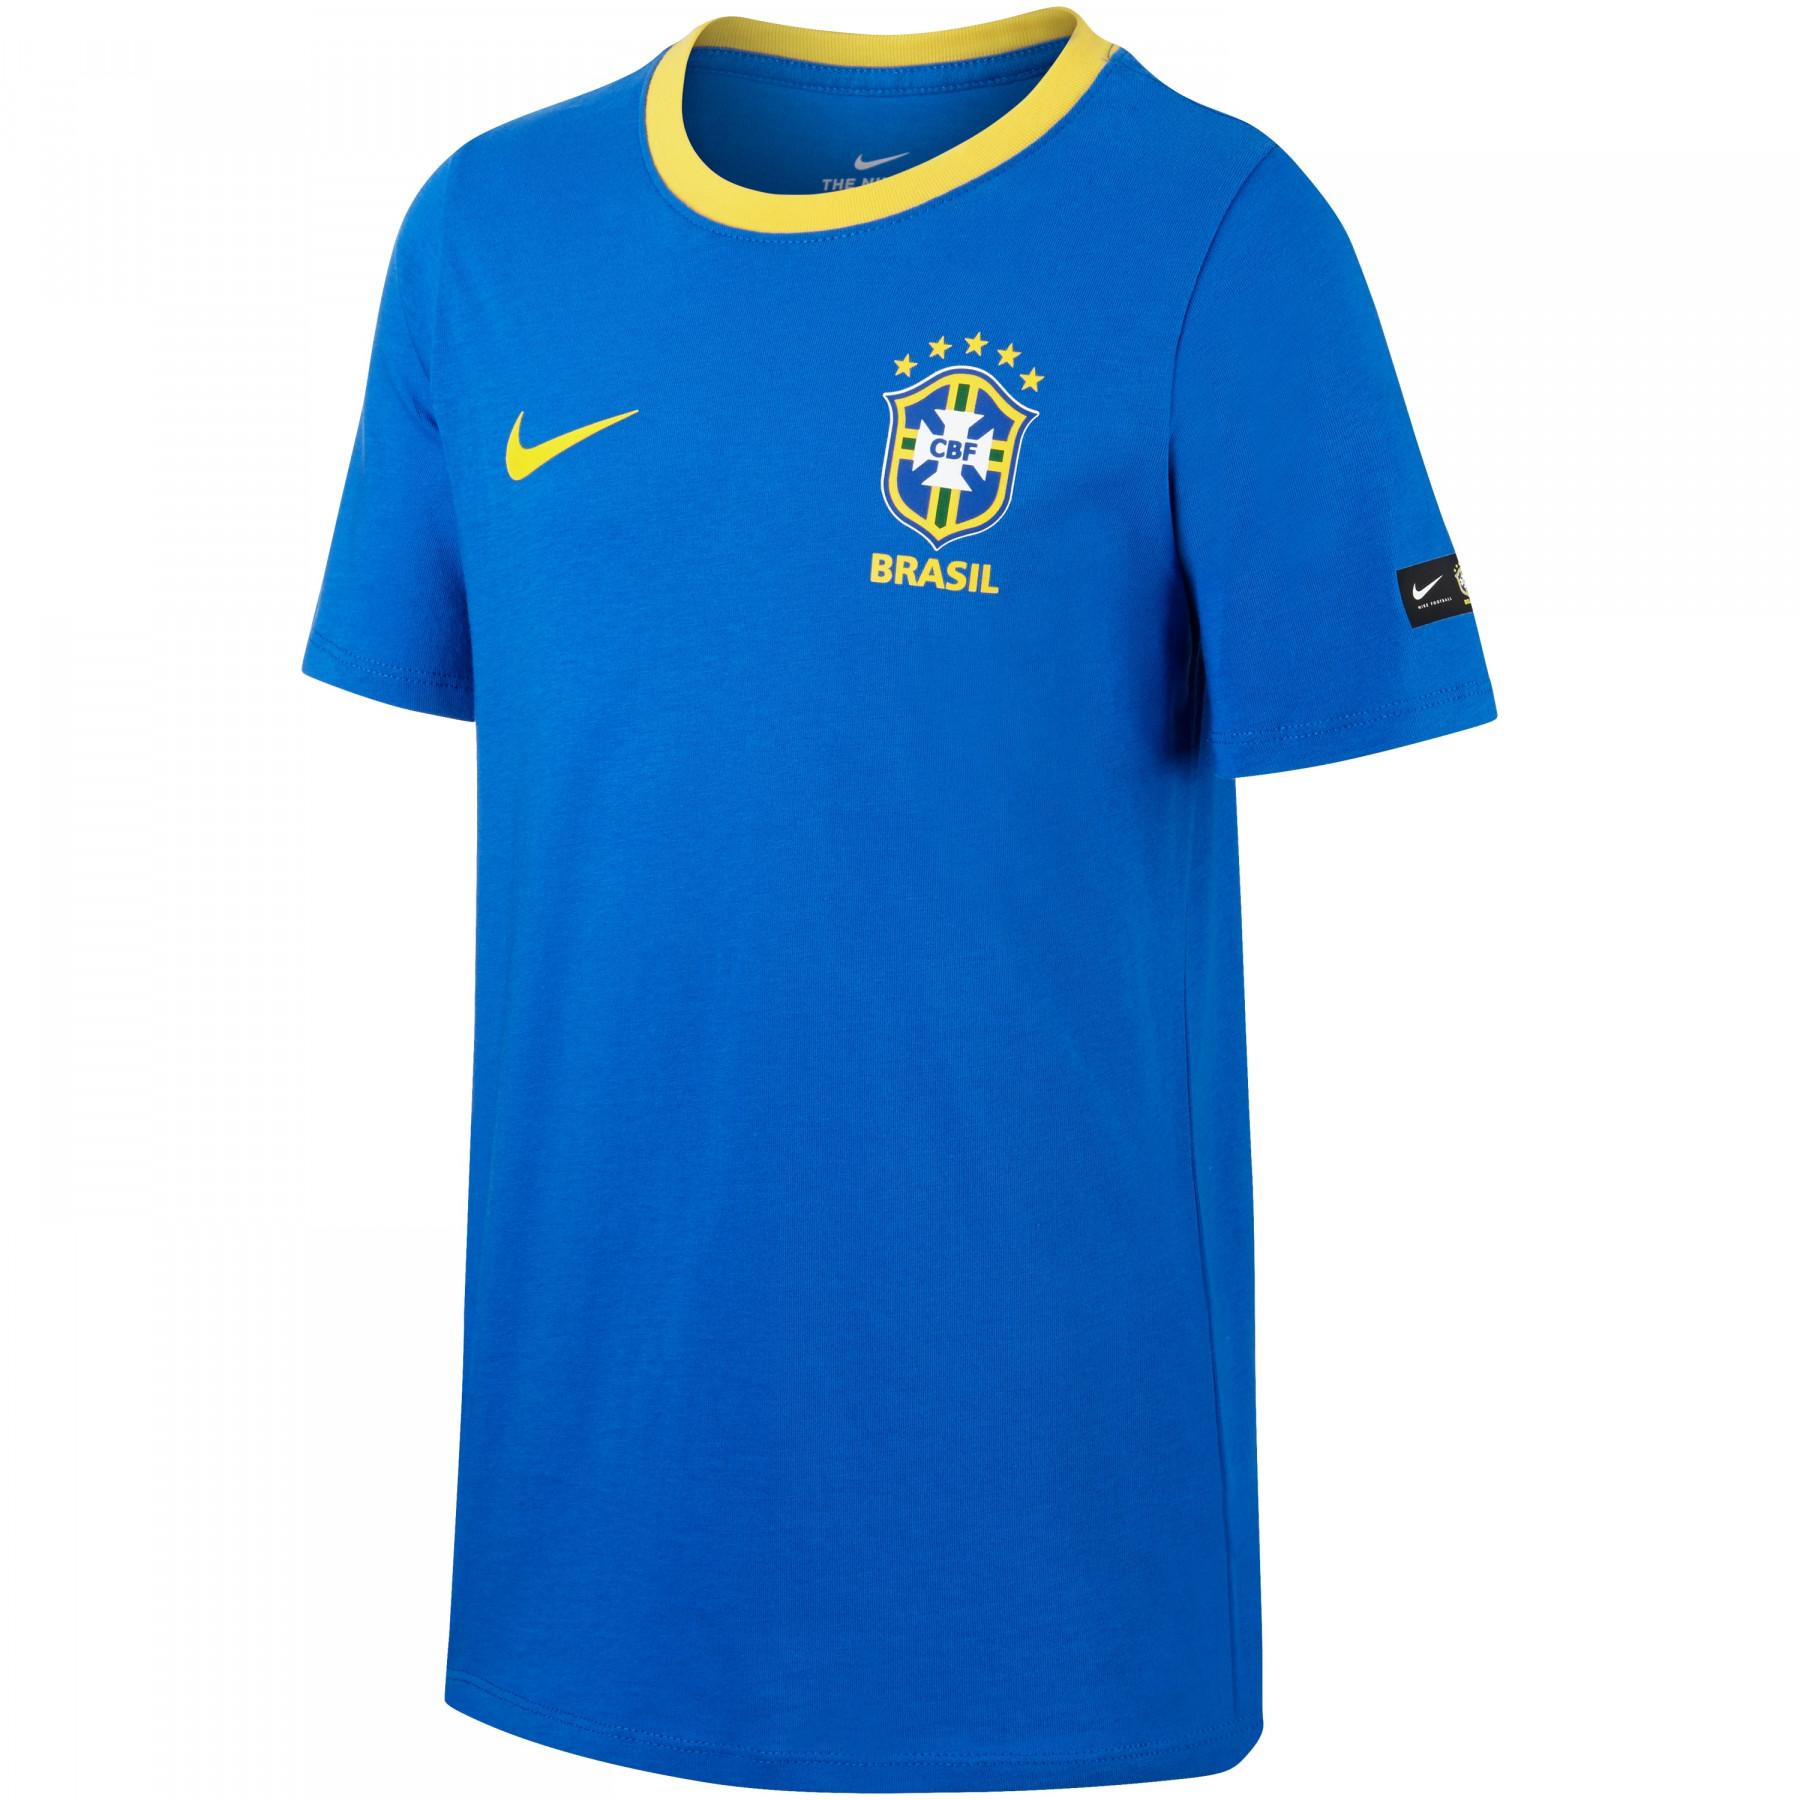 Camiseta para niños Brésil CBF Crest 2018